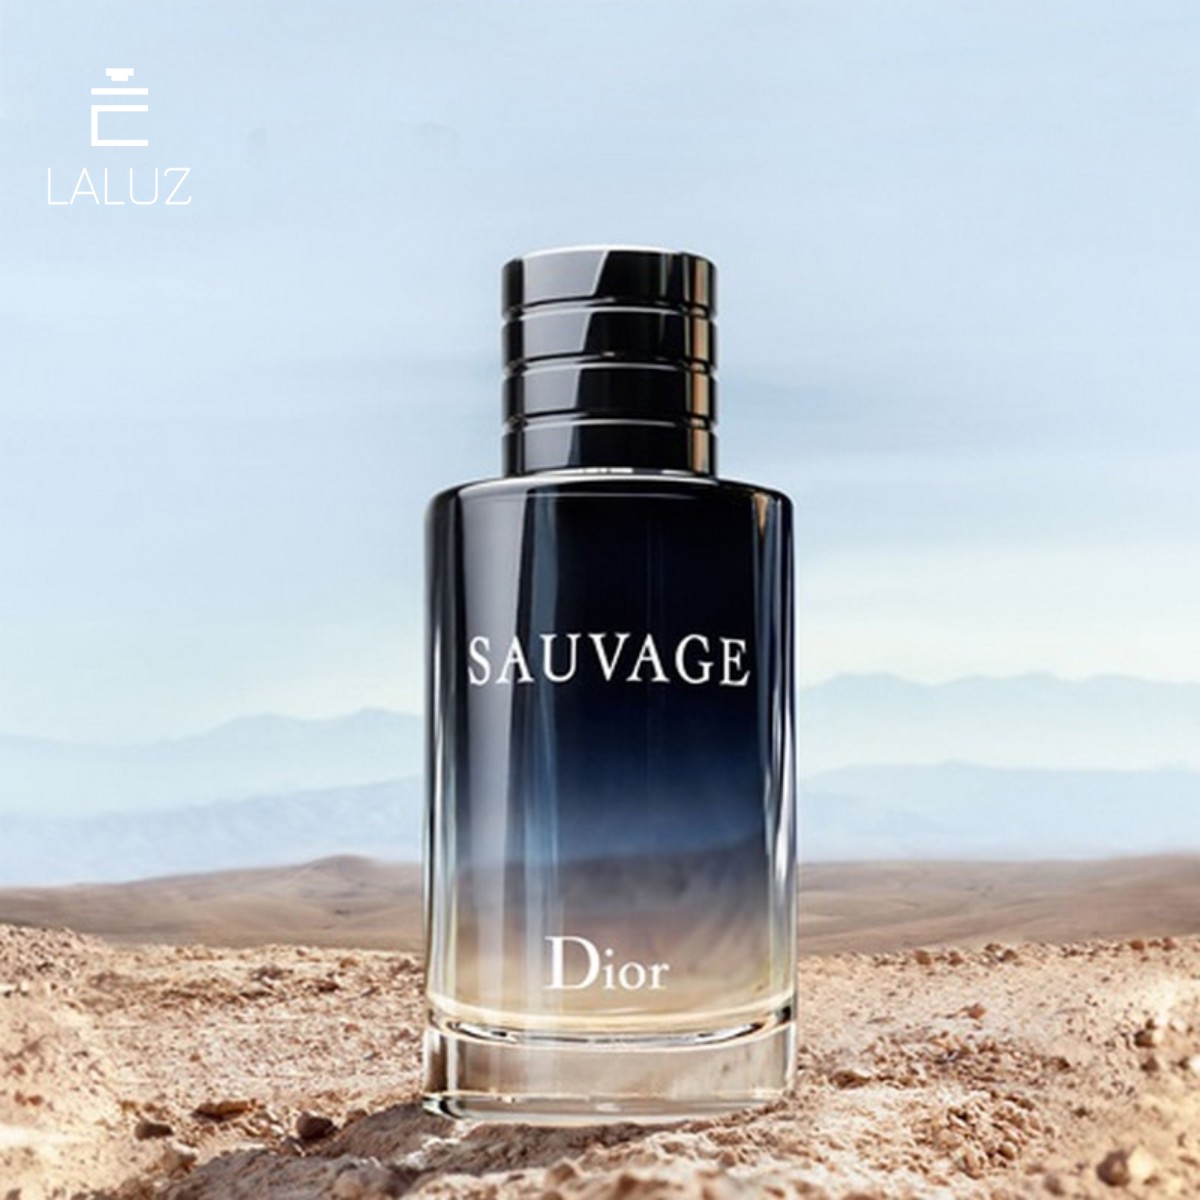 Nước hoa Dior nam Sauvage ETD chính hãng giá tốt